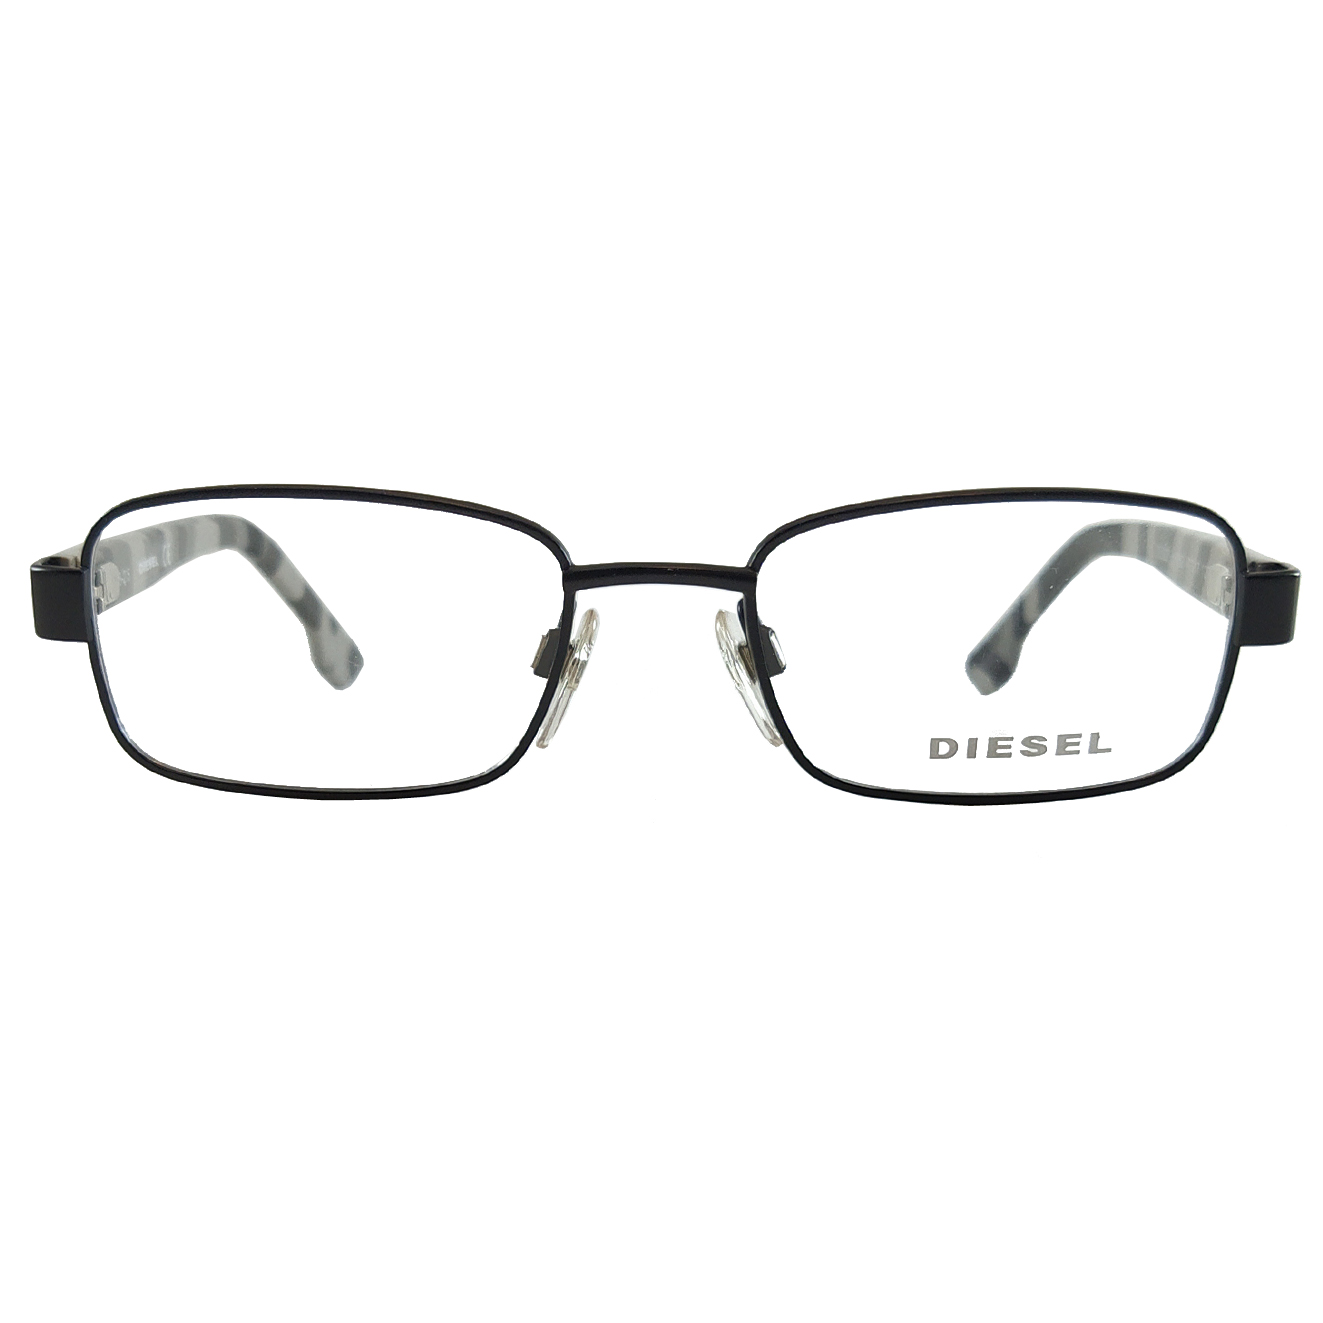 فریم عینک طبی بچگانه دیزل مدل DL522700247 -  - 3